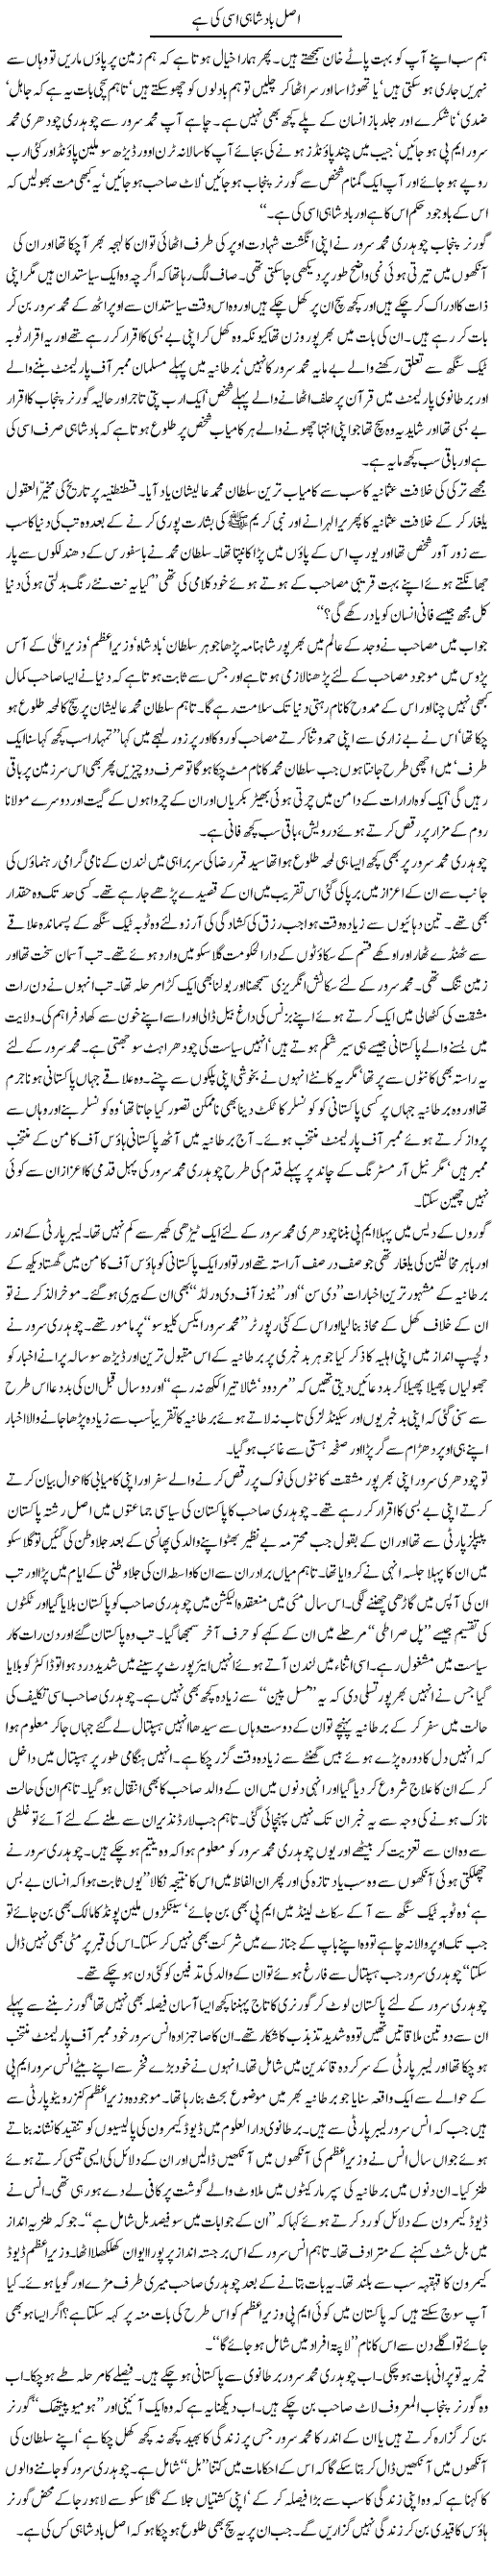 Asal Badshahi Isi Ki Hai | Arif Anis Malik | Daily Urdu Columns